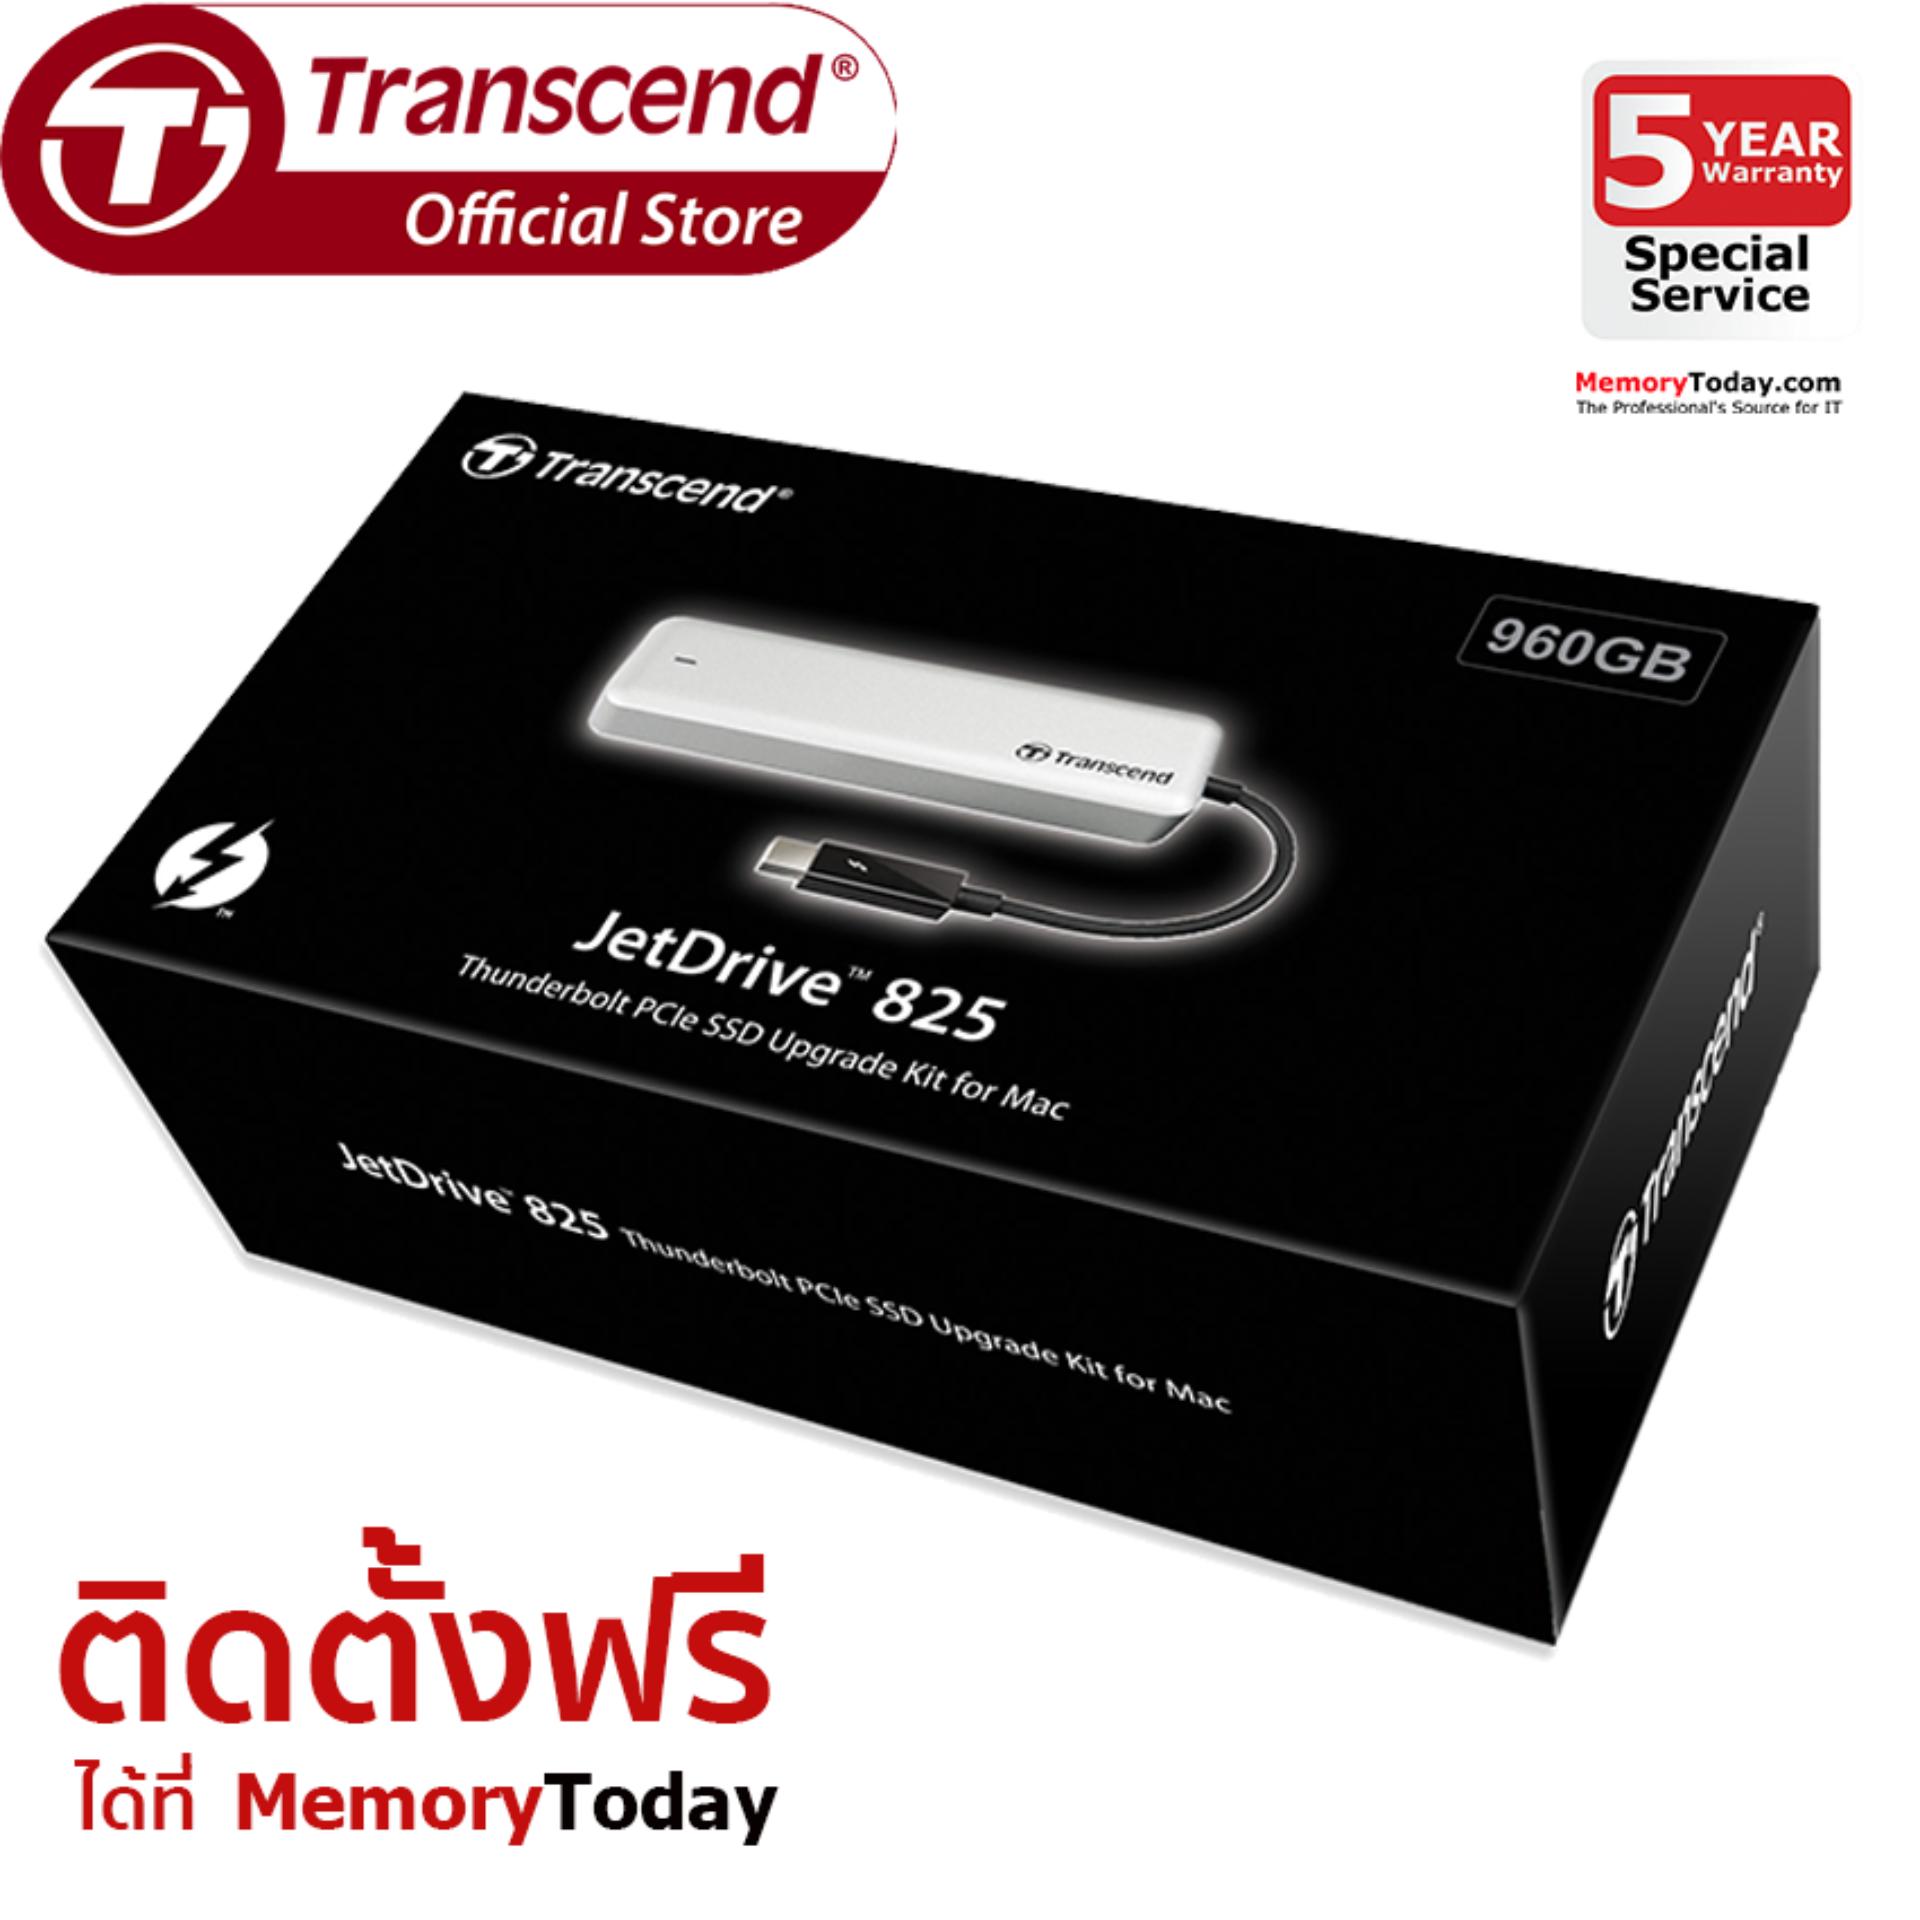 Transcend JetDrive 825 SSD Upgrade Kits for Mac 960GB (TS960GJDM825)